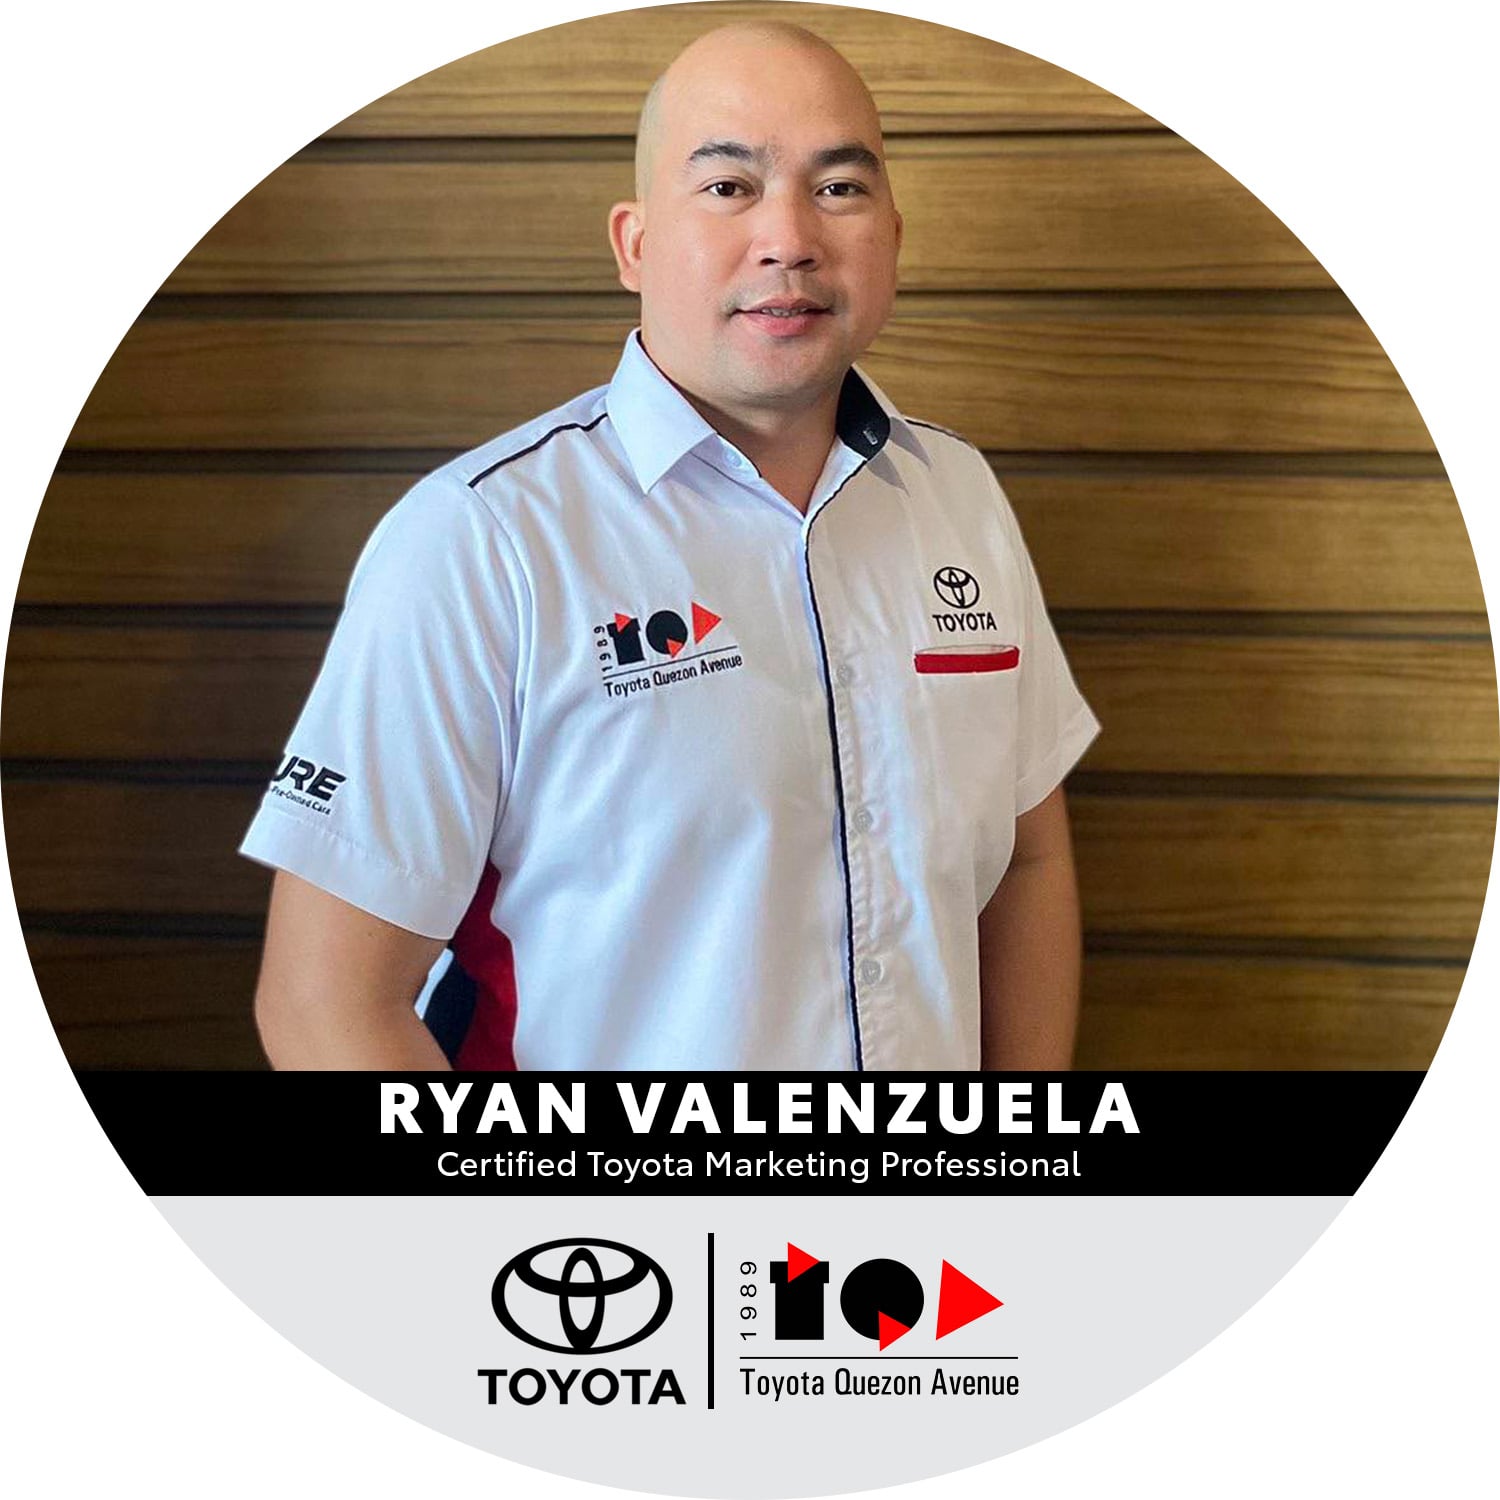 Certified Toyota Marketing Professionals - Ryan Valenzuela